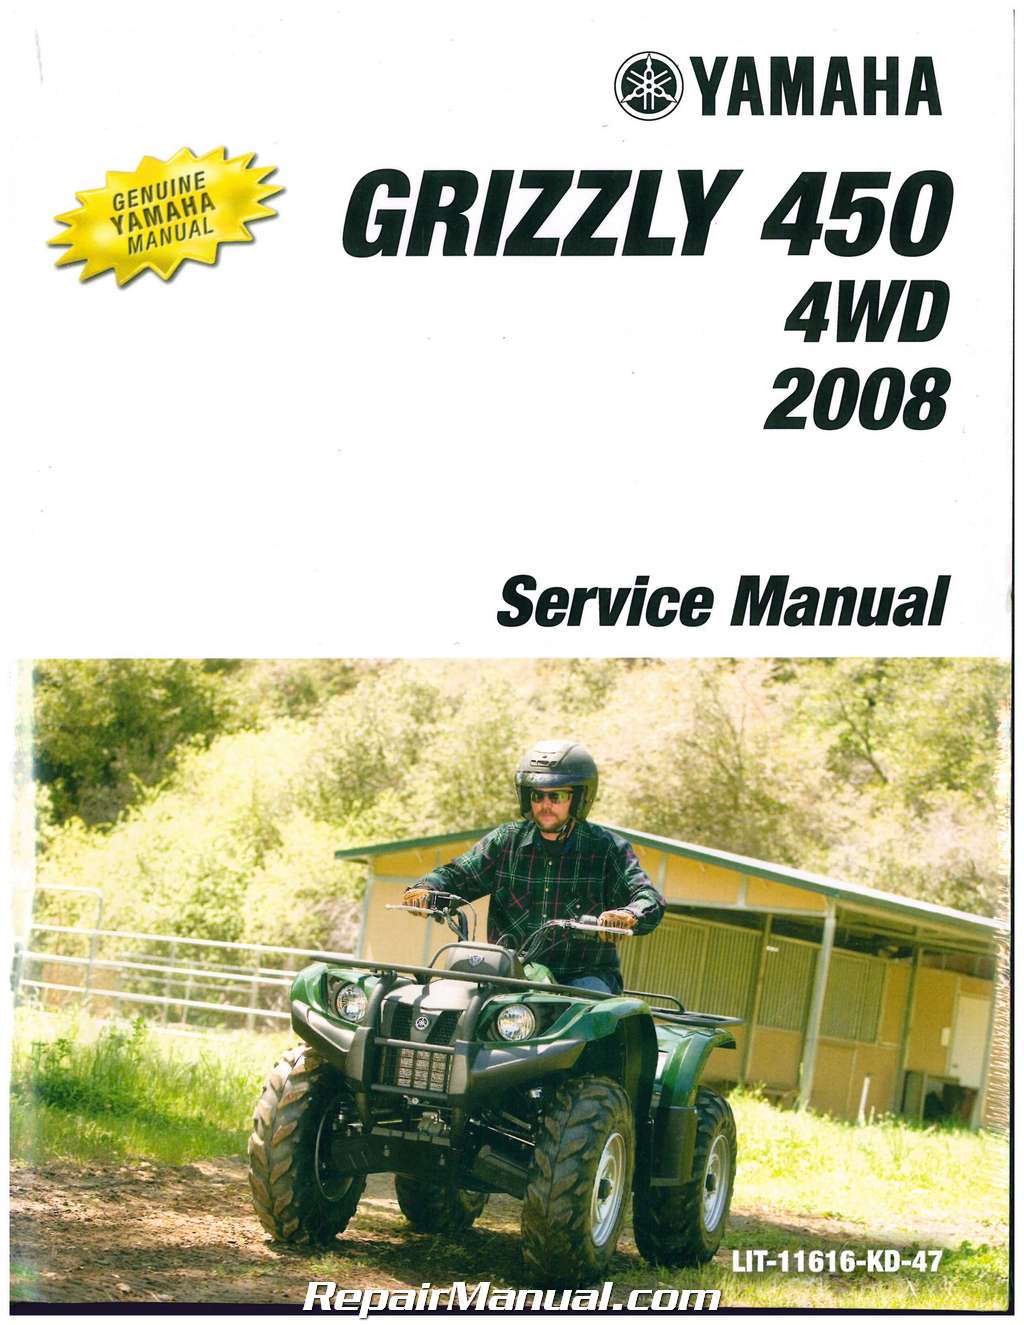 2005 yamaha kodiak 450 owners manual